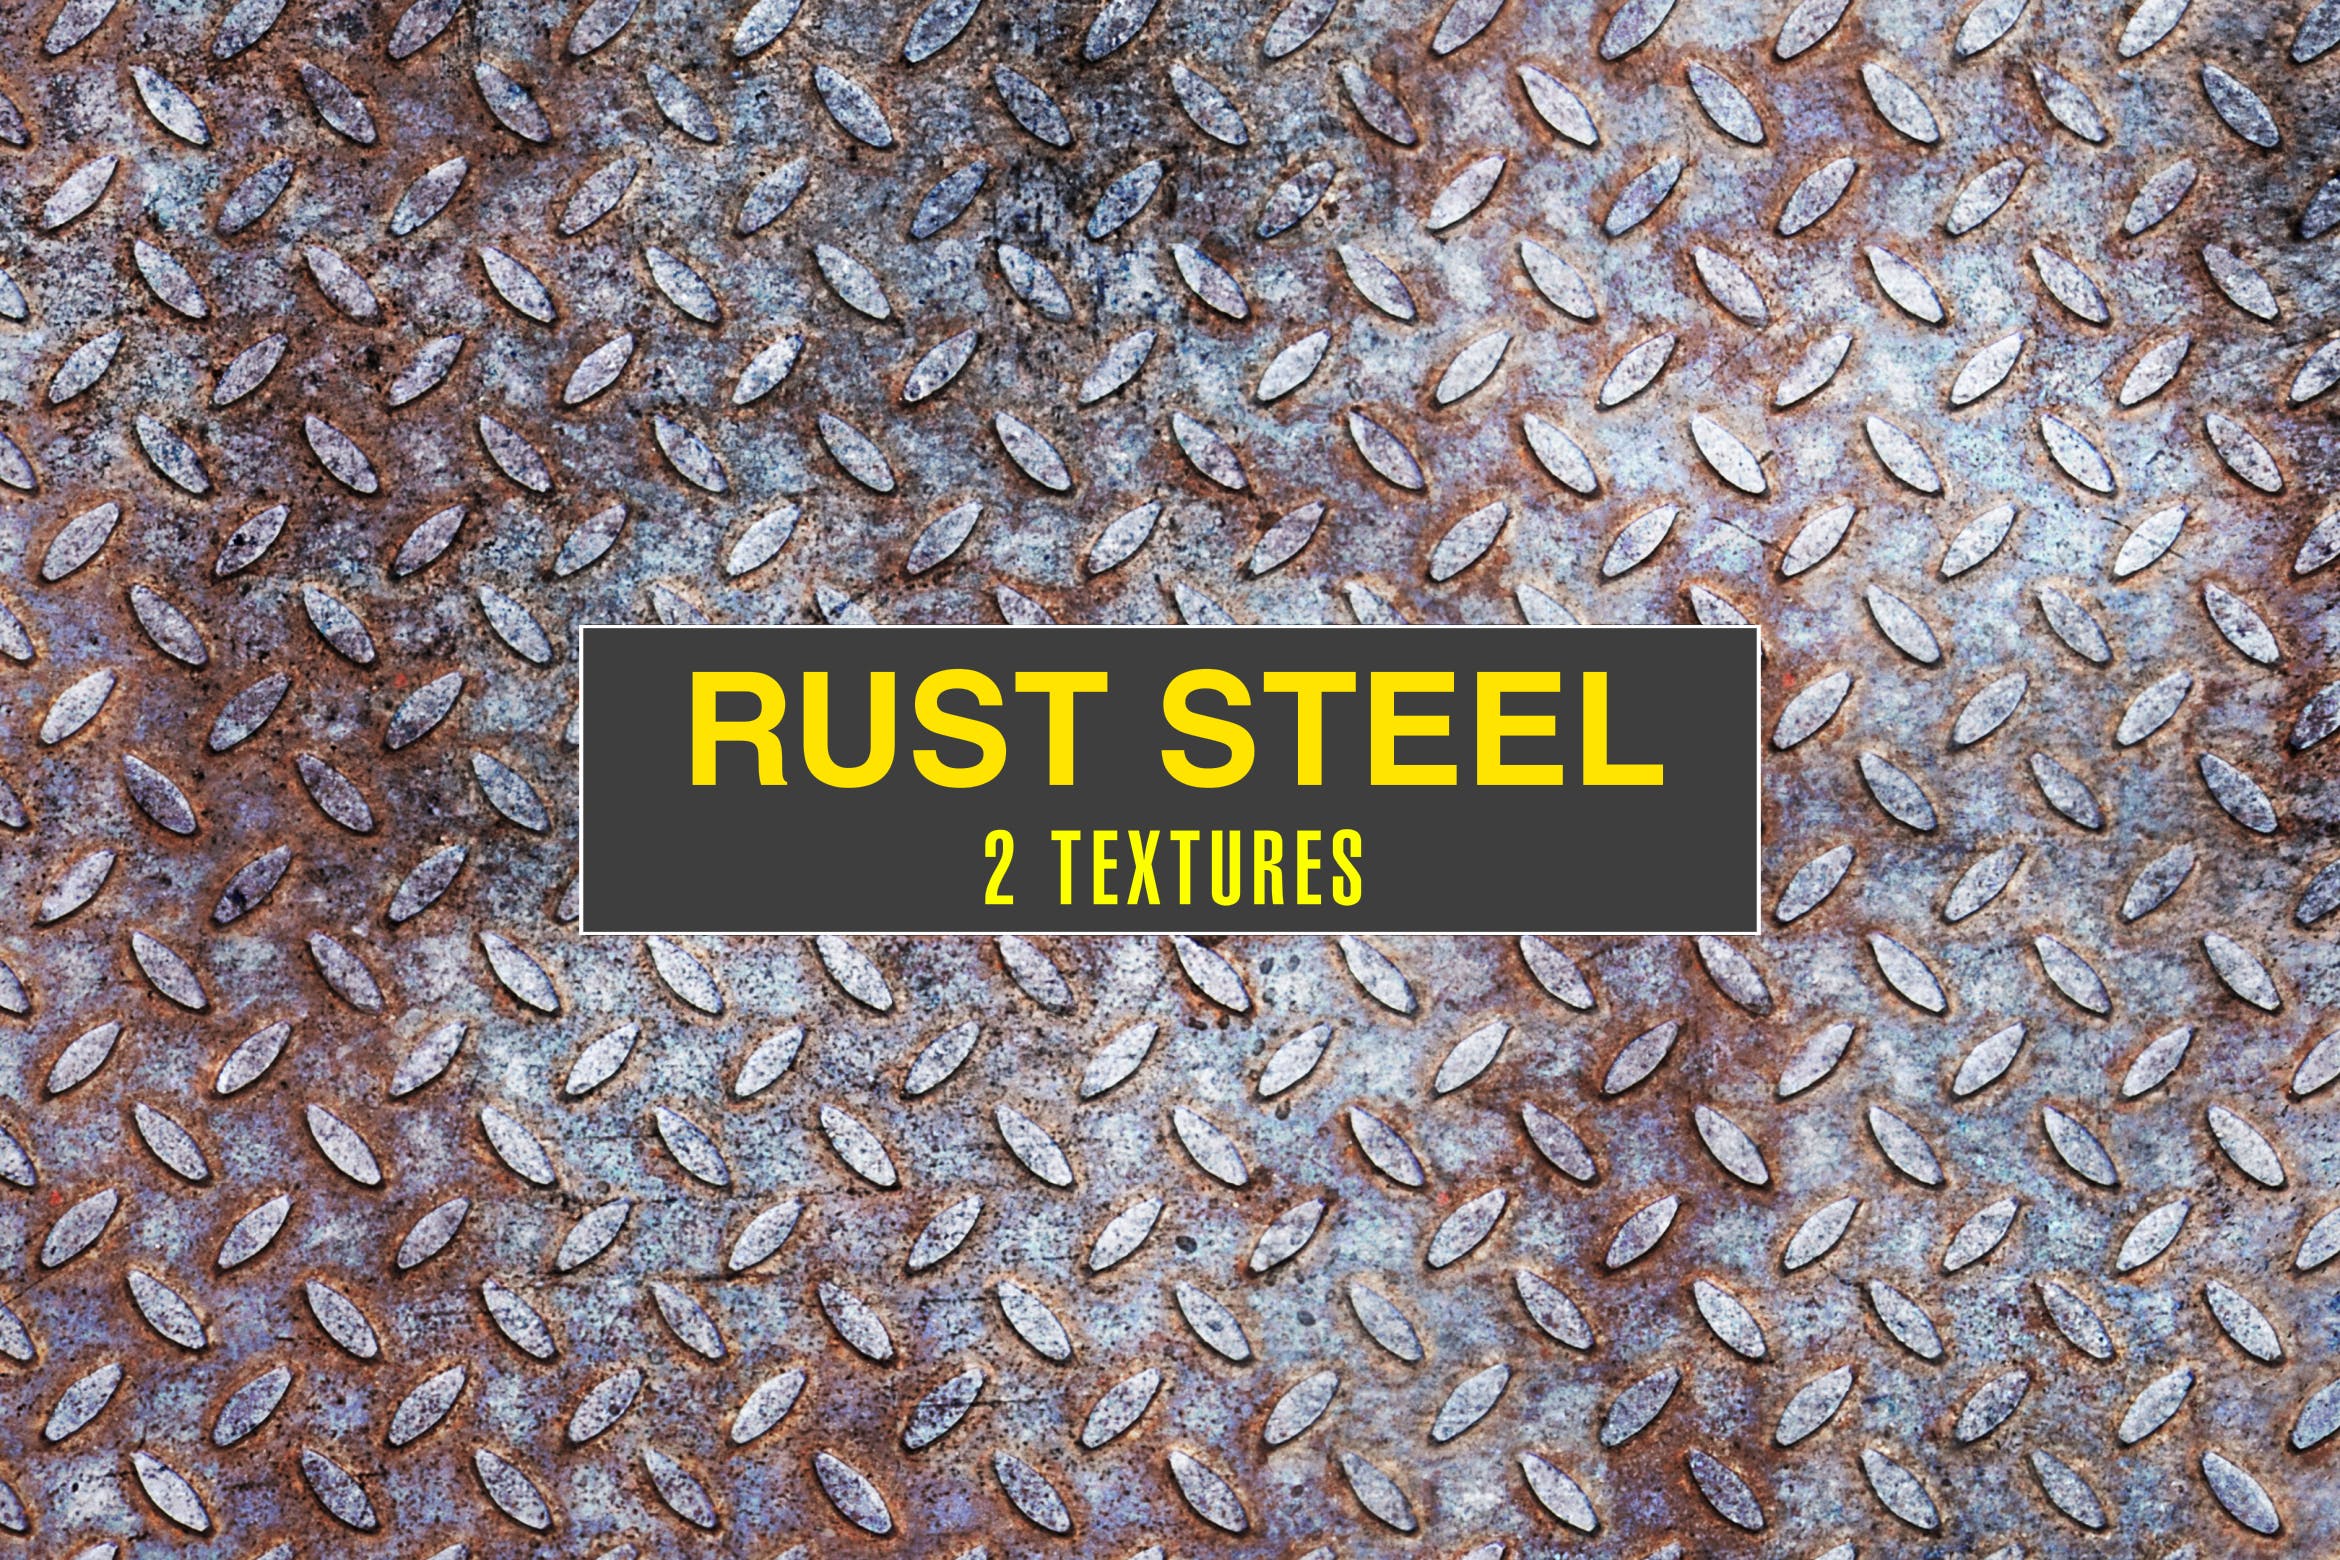 钢铁金属生锈纹理高清背景图片素材 Rusted Steel Textures插图